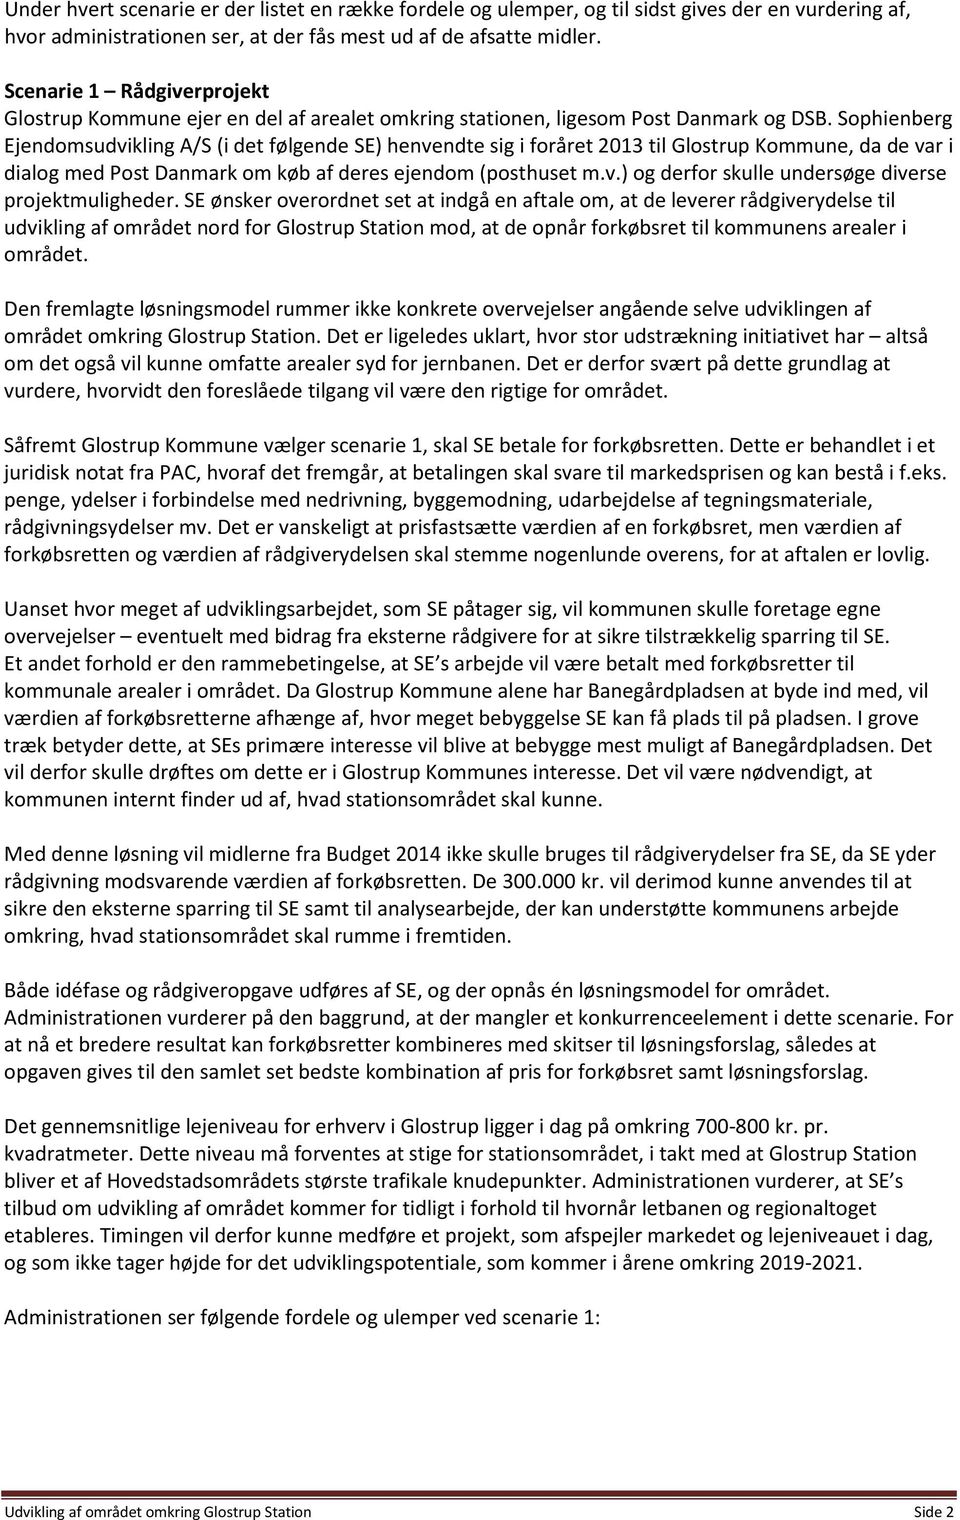 Sophienberg Ejendomsudvikling A/S (i det følgende SE) henvendte sig i foråret 2013 til Glostrup Kommune, da de var i dialog med Post Danmark om køb af deres ejendom (posthuset m.v.) og derfor skulle undersøge diverse projektmuligheder.